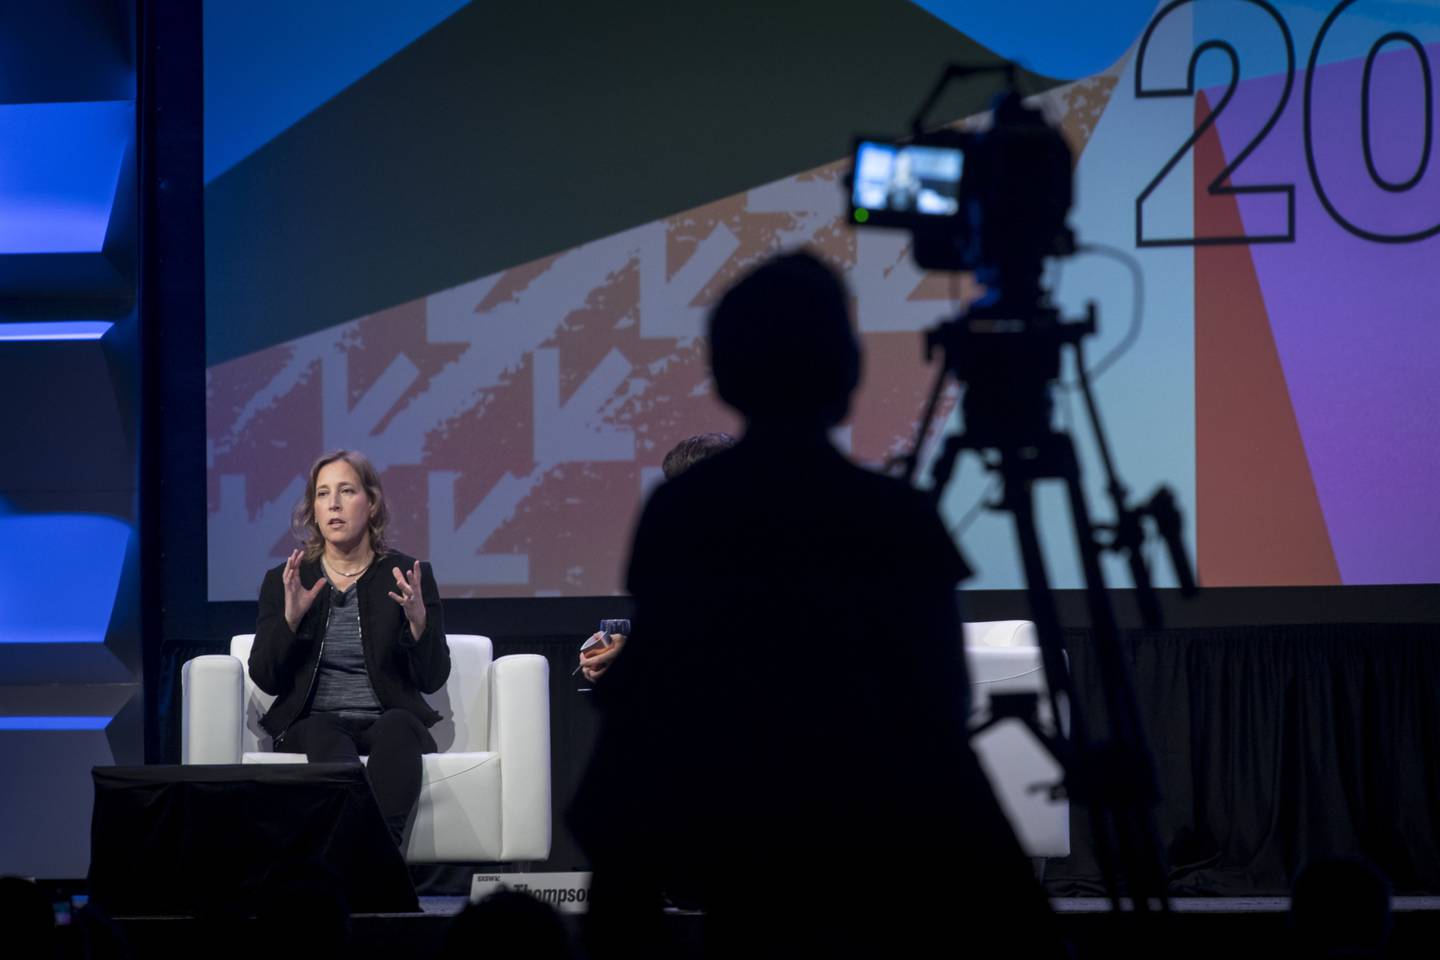 A CEO do YouTube, Susan Wojcicki, dirige uma das plataformas mais importantes do mundo. Trata-se de uma exceção em um ambiente em que o viés de gênero oferece barreiras a mulheres acessarem mentoria, financiamento e negóciosdfd